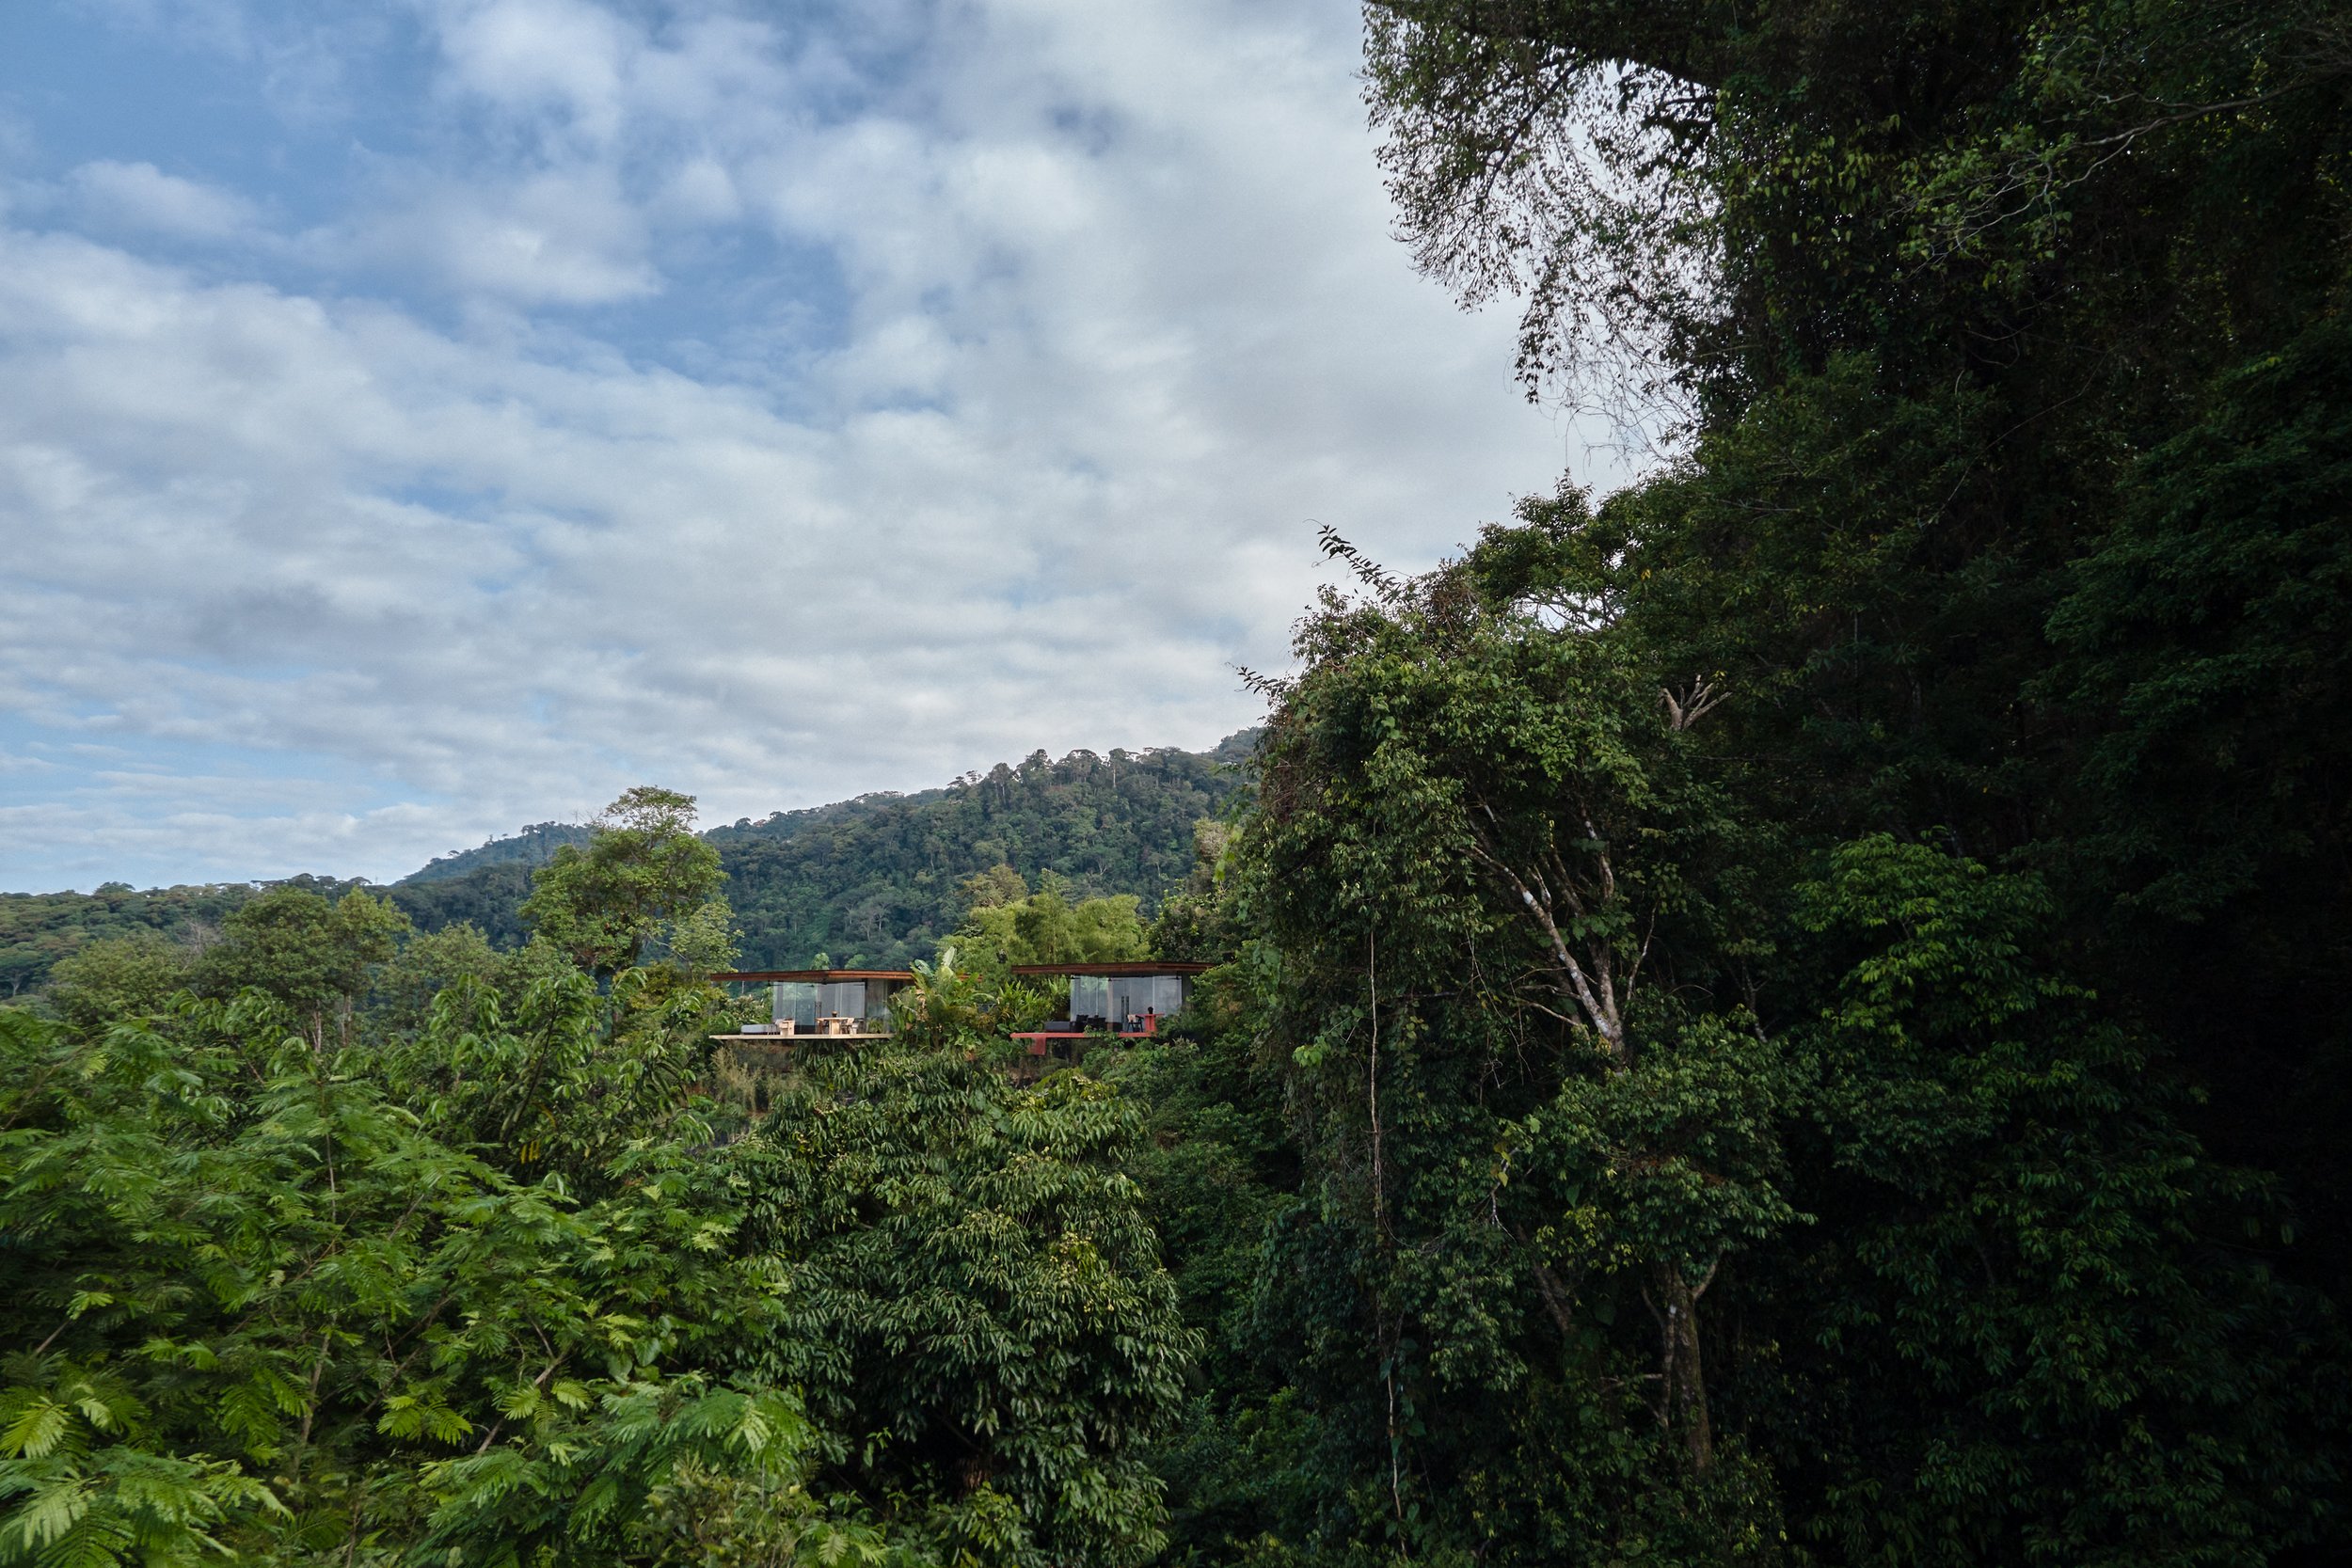 Подивіться на будинки у джунглях Коста-Рики, в які захочеться втекти від усіх проблем